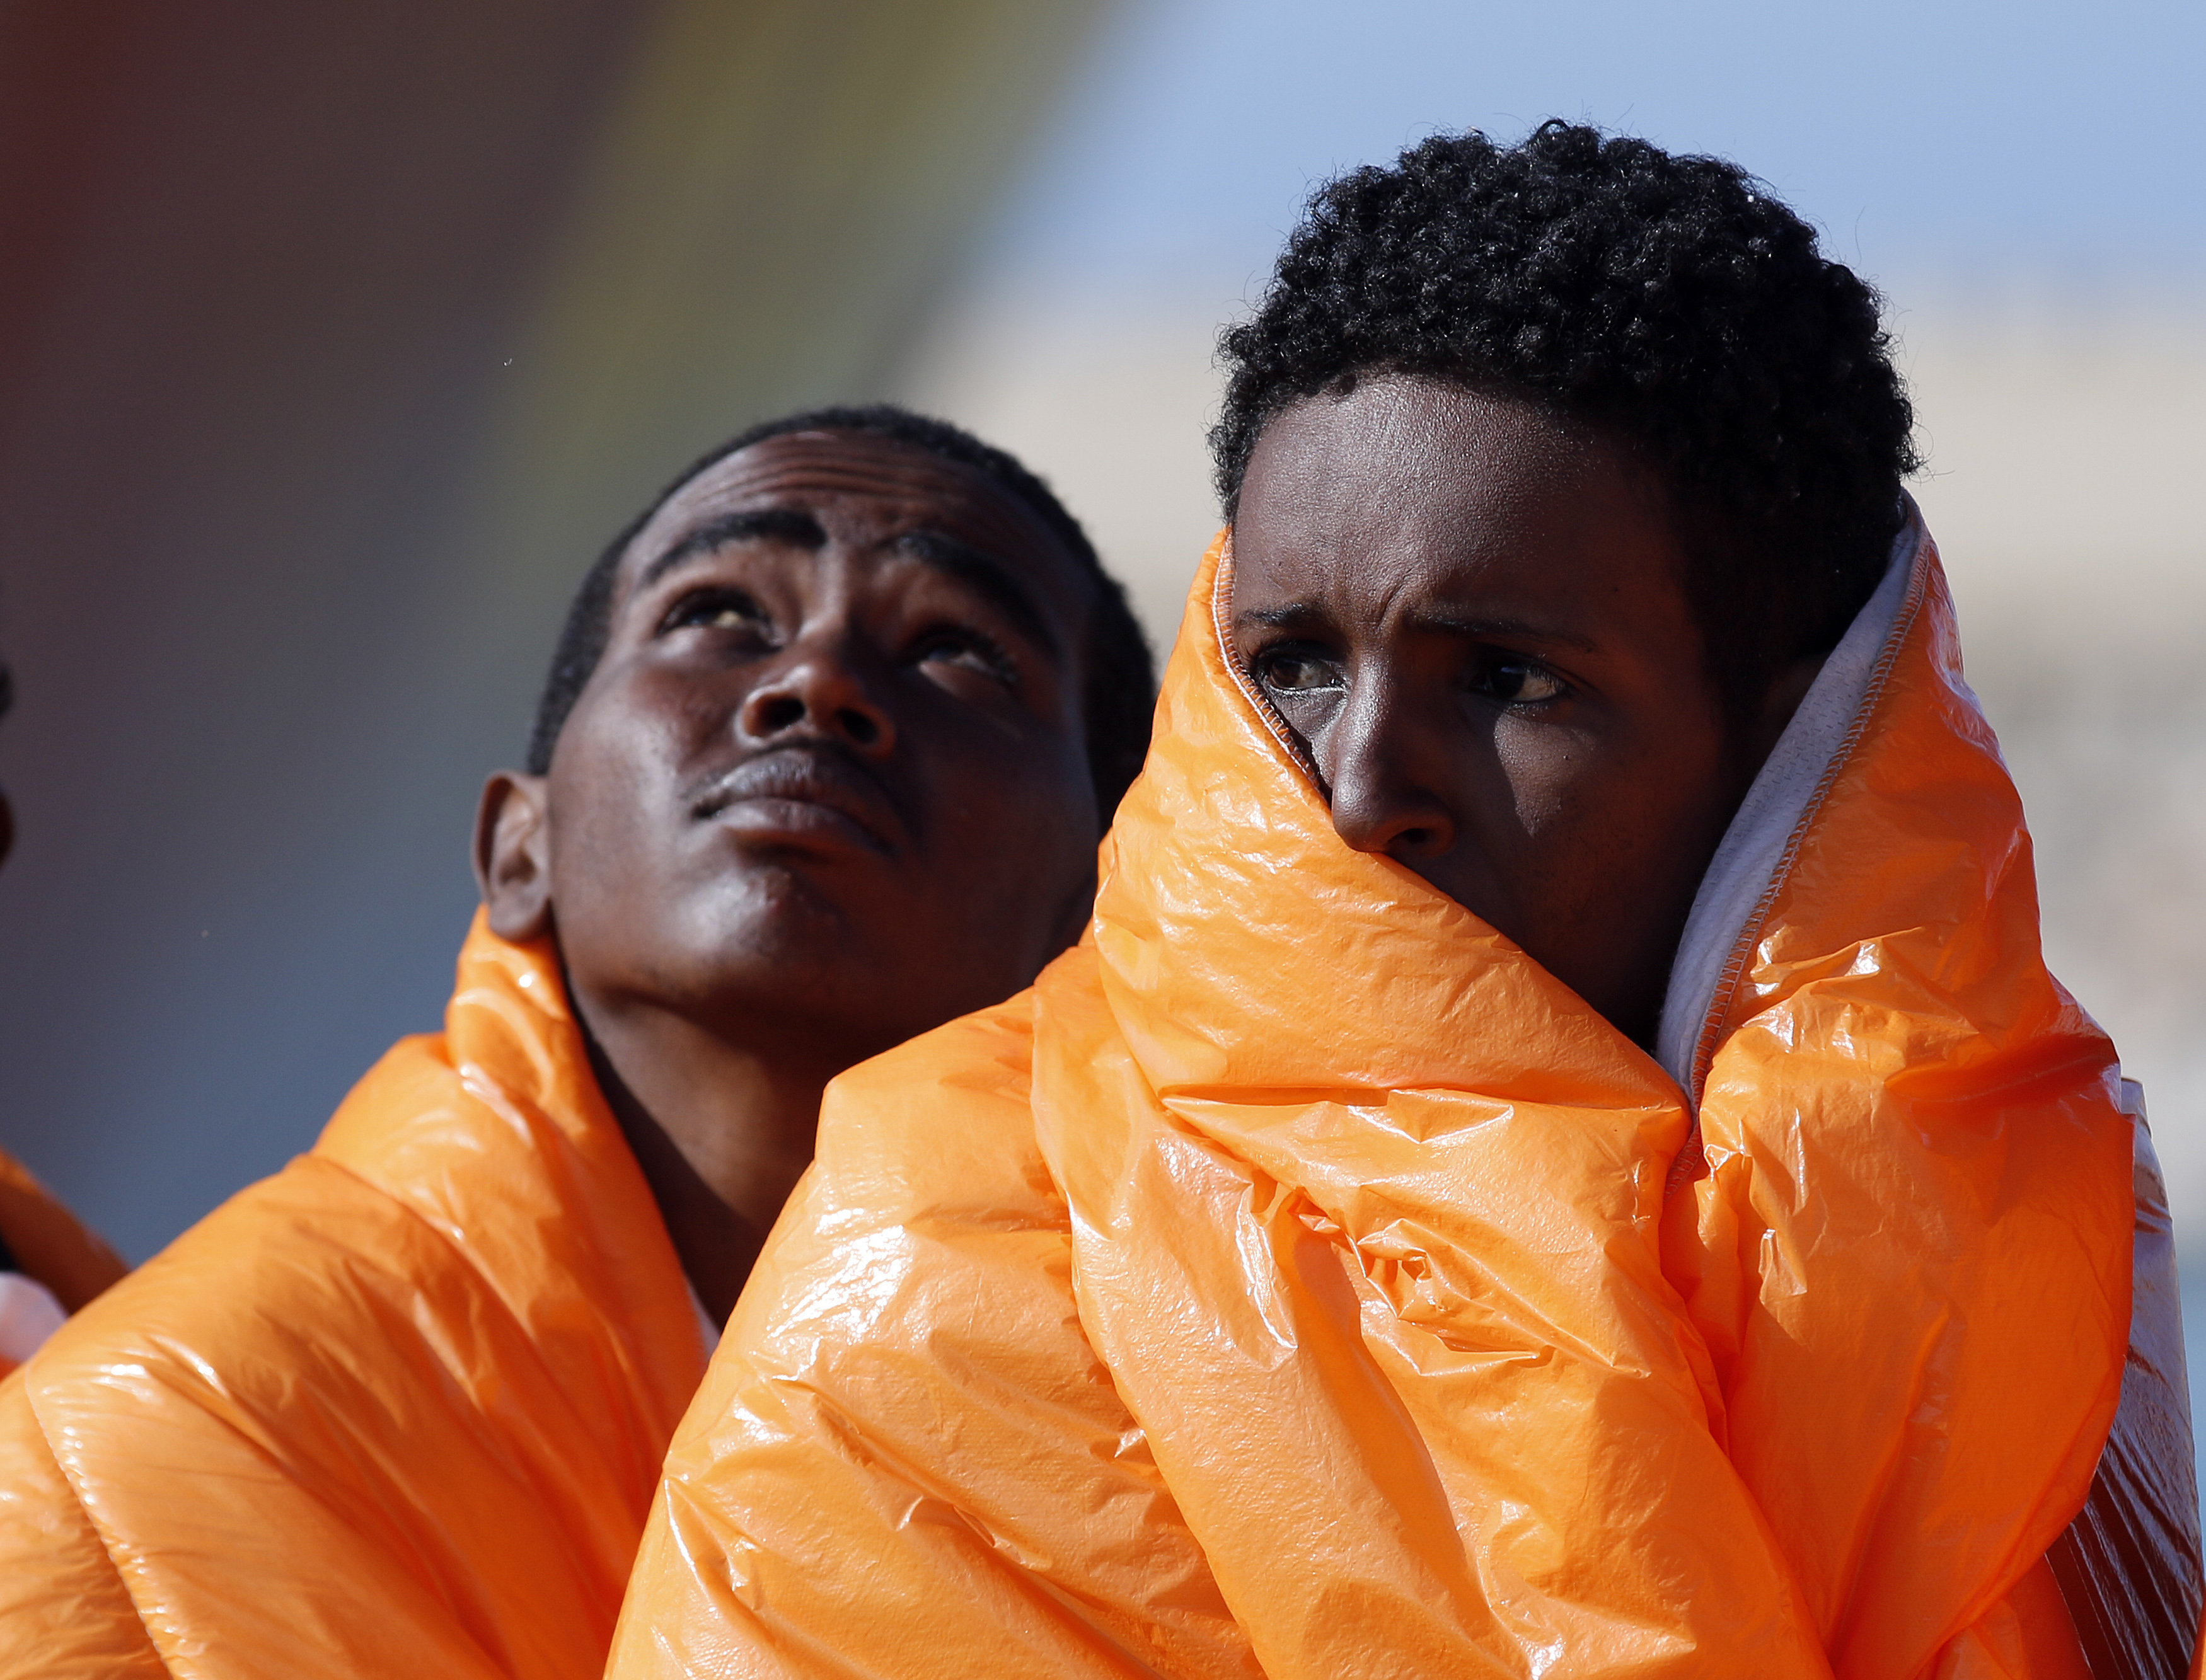 Συμφωνίες με αφρικανικά κράτη για το προσφυγικό θέλει η Γερμανία